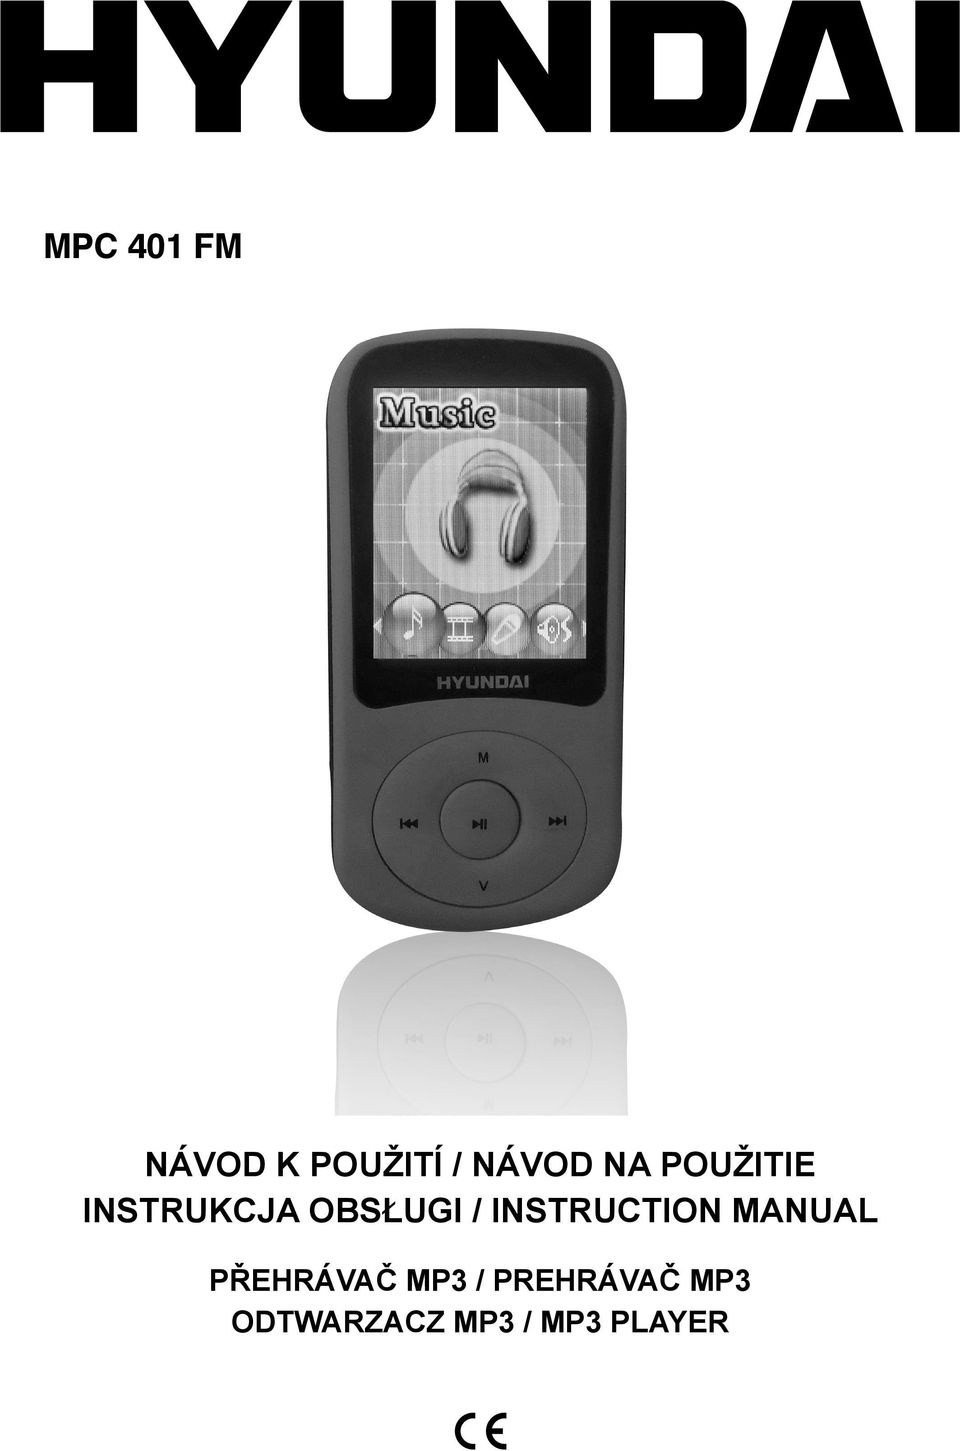 INSTRUCTION MANUAL PŘEHRÁVAČ MP3 /